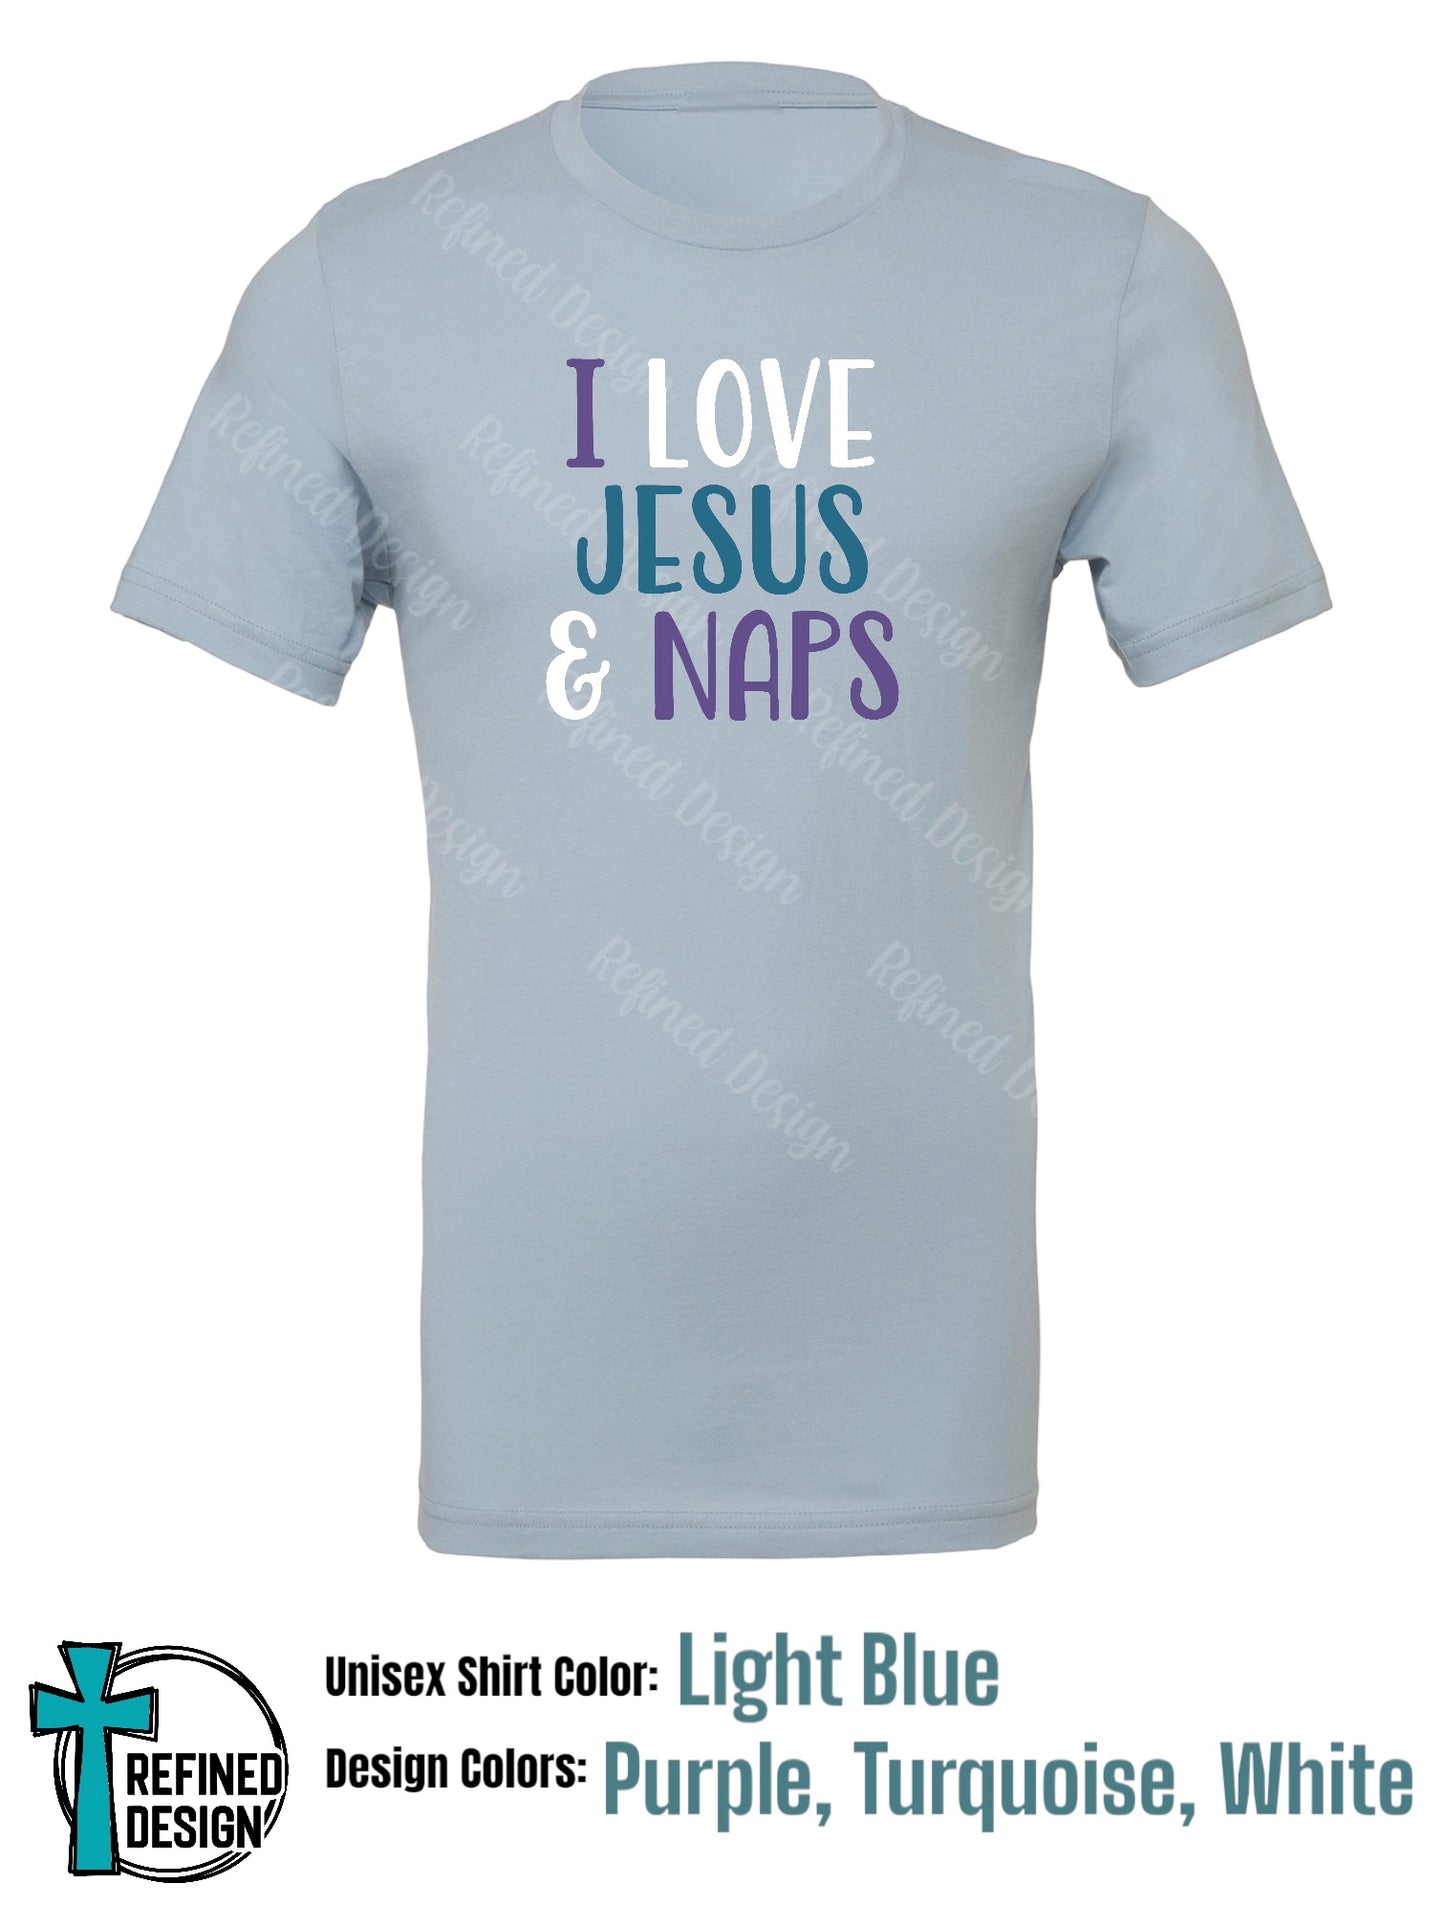 “I Love Jesus & Naps” T-Shirt